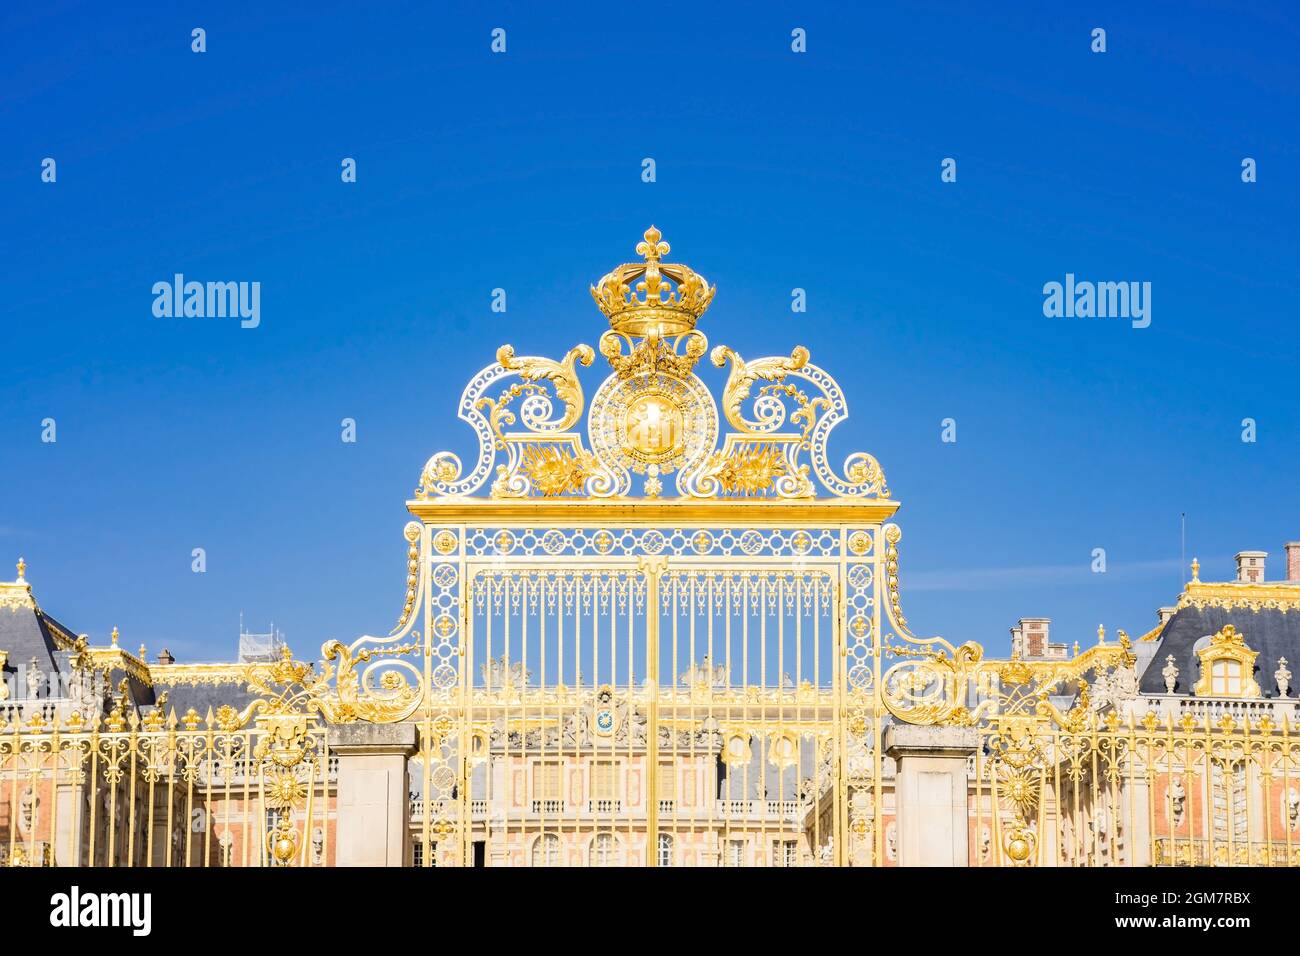 La porte d'or du château de Versailles, ou du château de Versailles, ou simplement de Versailles, en France Banque D'Images